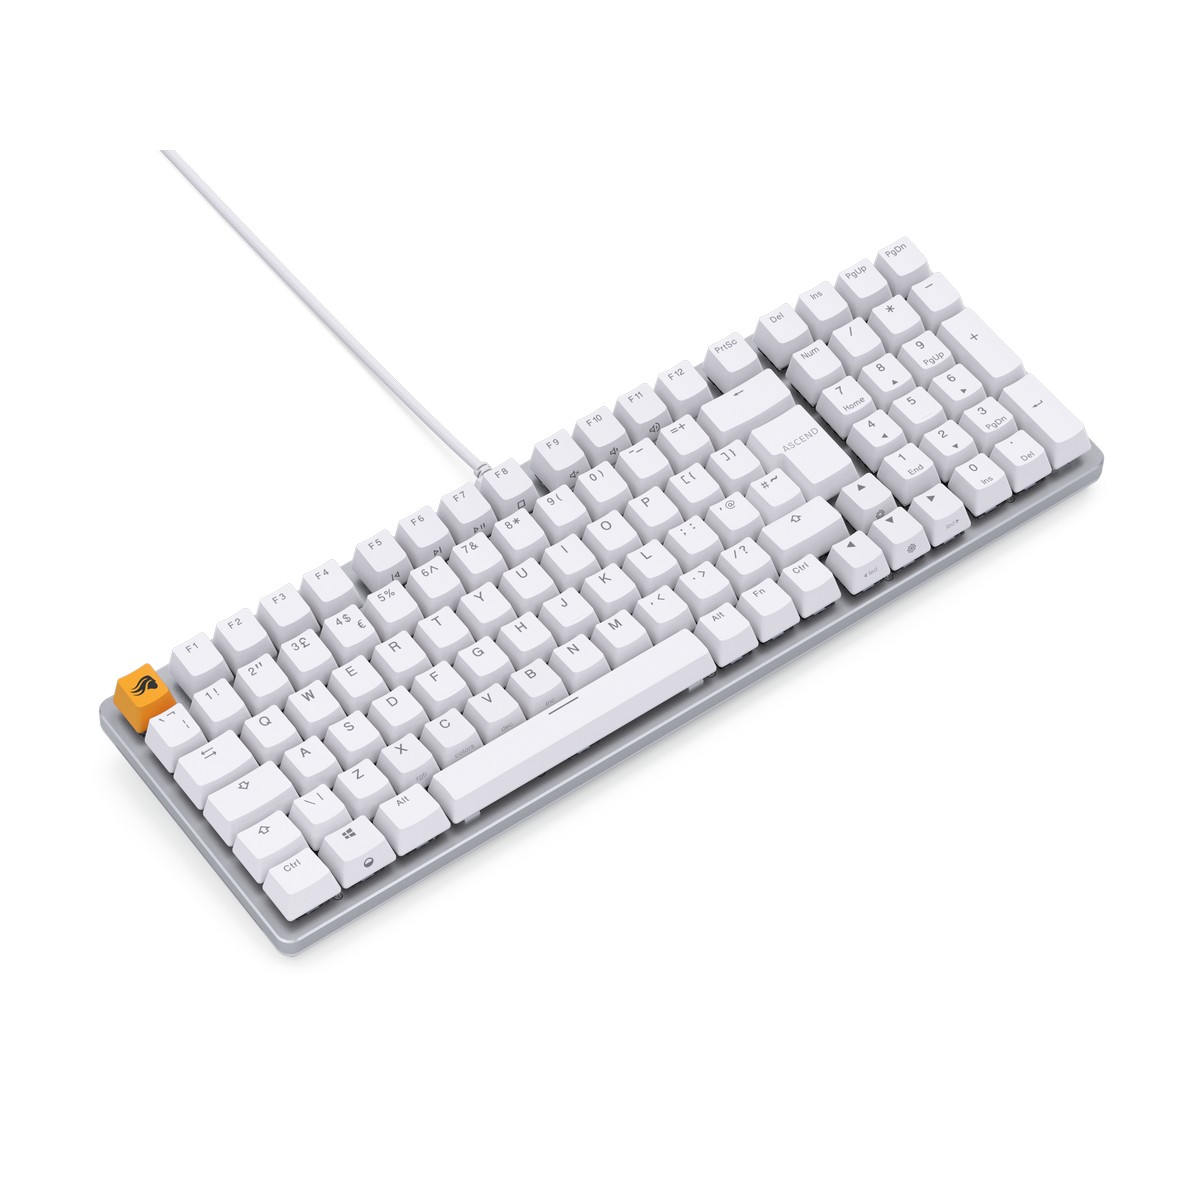 Glorious - Glorious GMMK 2 96% RGB USB Mechanical Gaming Keyboard UK ISO - White (GLO-GMMK2-96-FOX-ISO-W-UK)